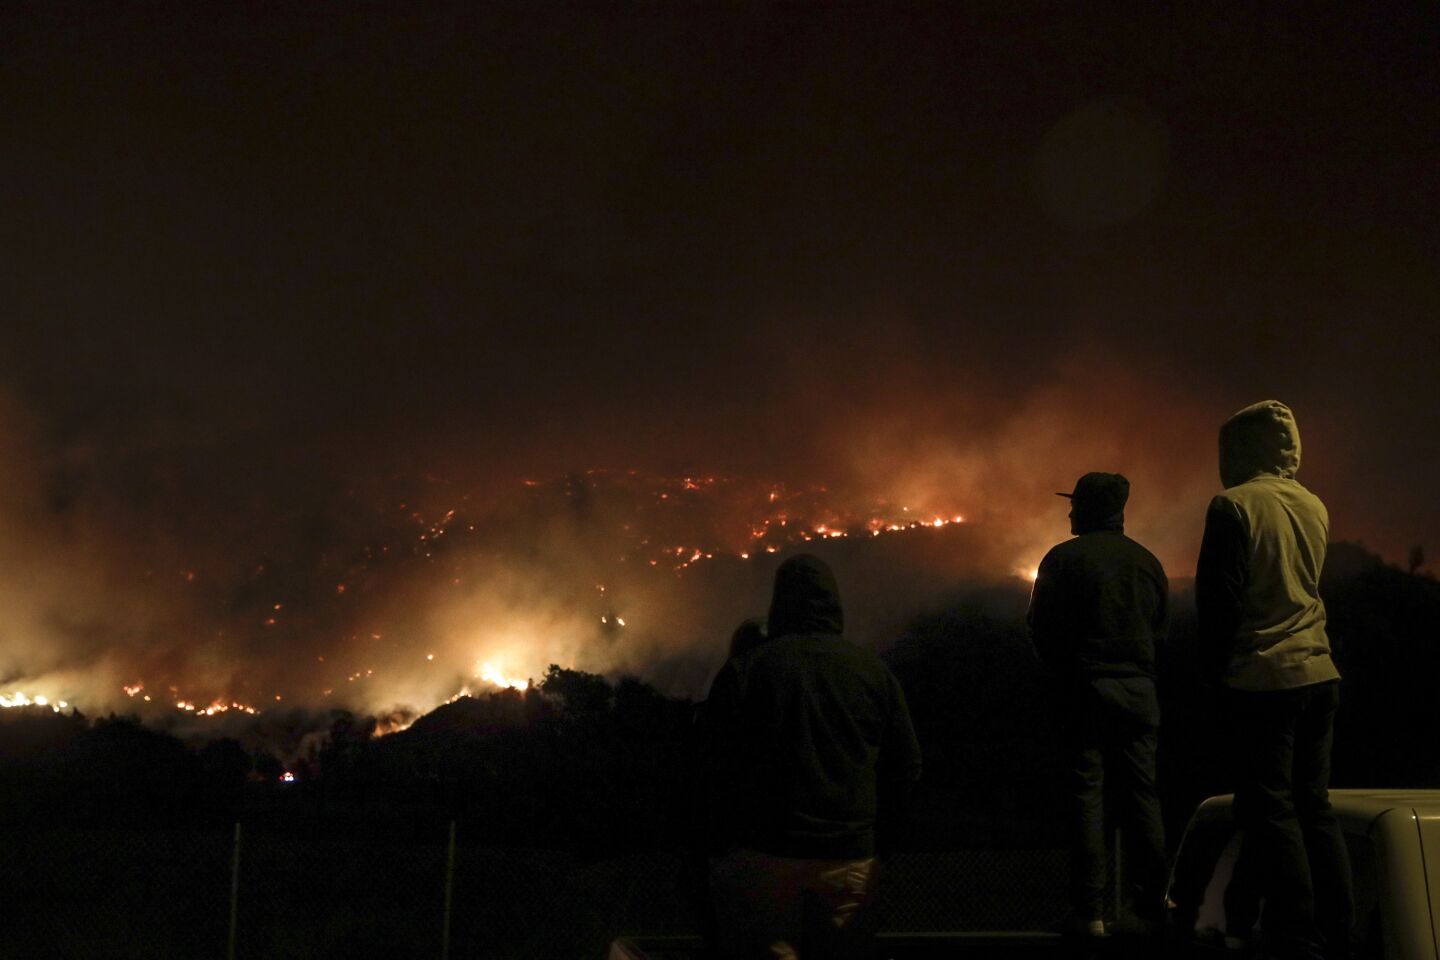 Maria fire in Ventura County